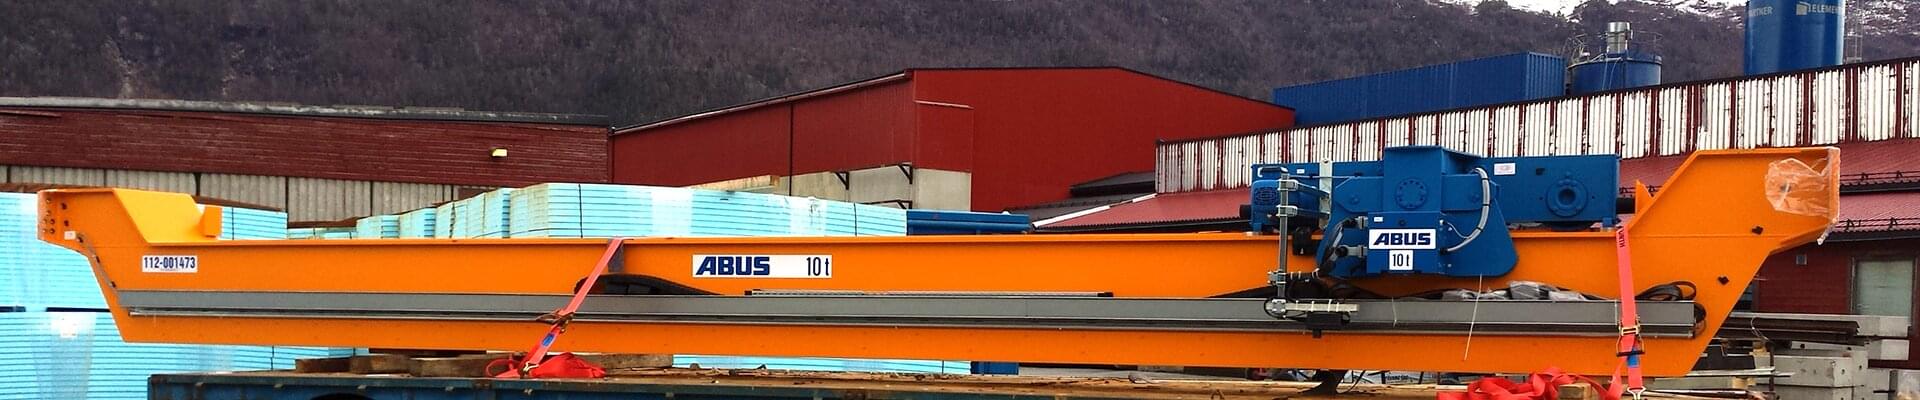 Dźwignice ABUS w młodej norweskiej firmie betoniarskiej